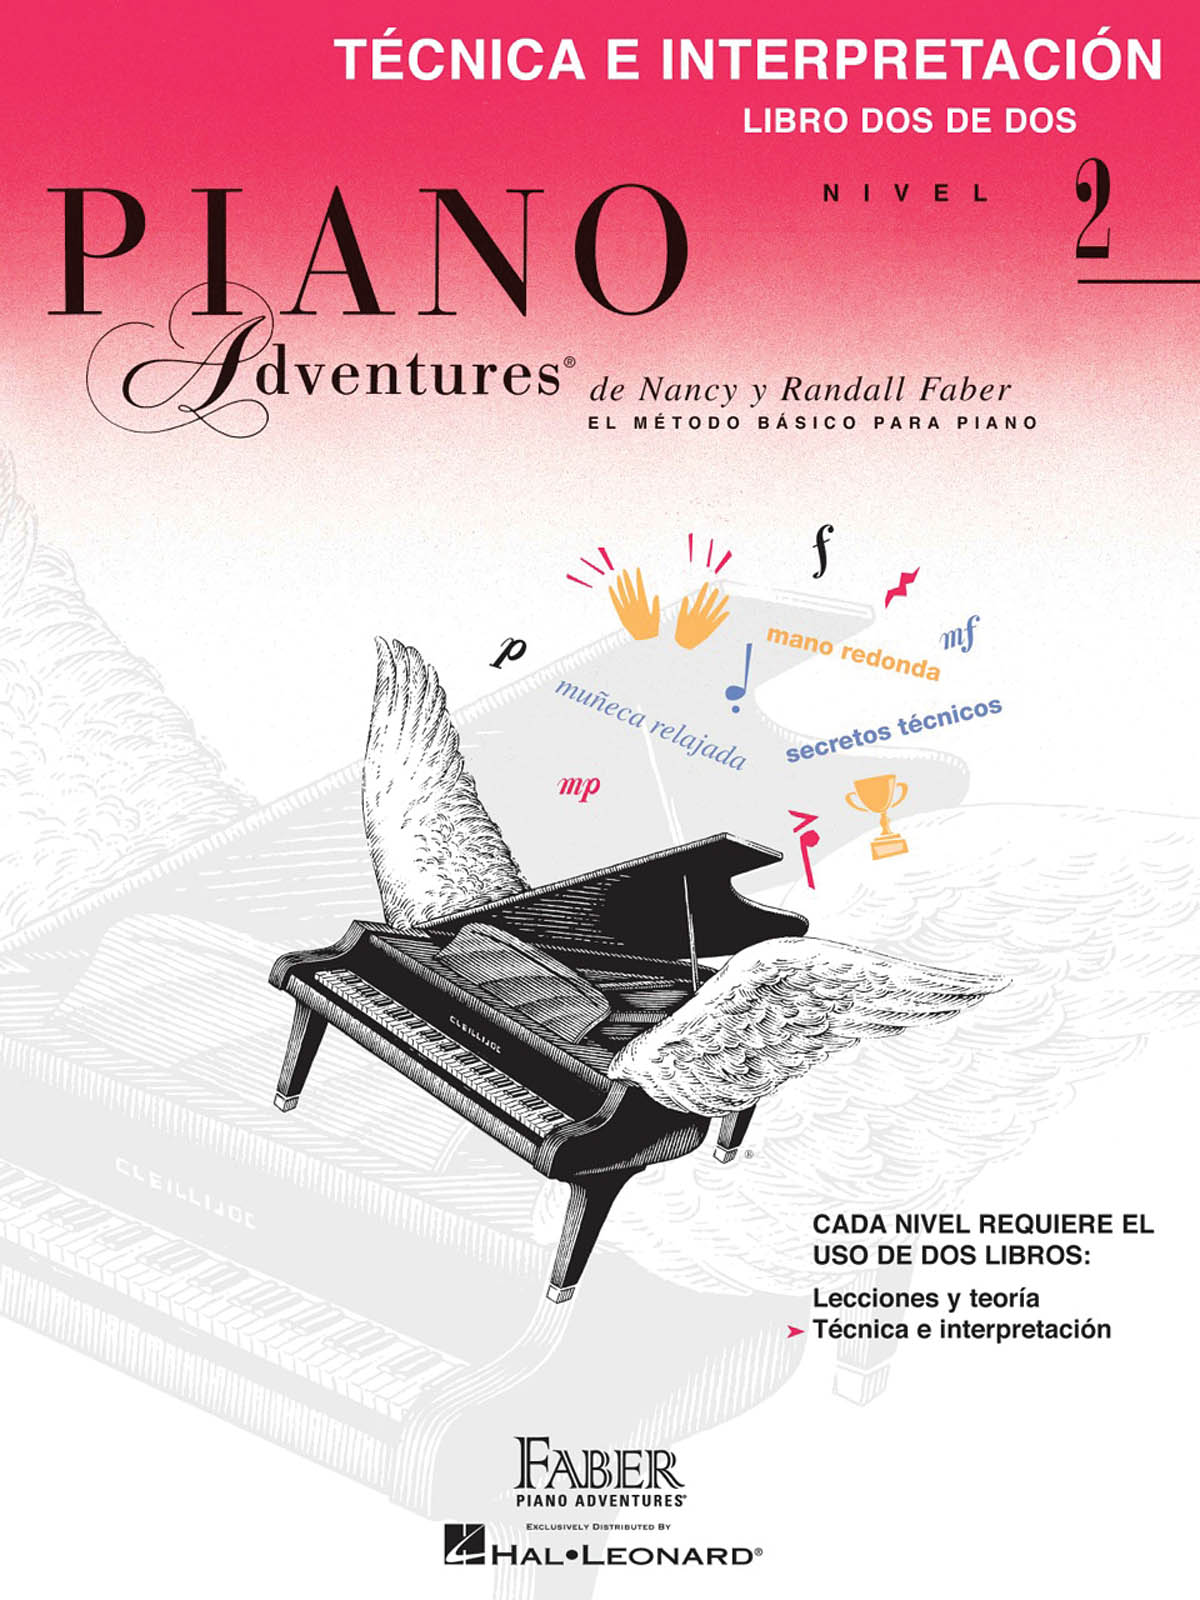 Faber Piano Adventures: Técnica e Interpretación 2 - Libro Dos de Dos Nivel 2